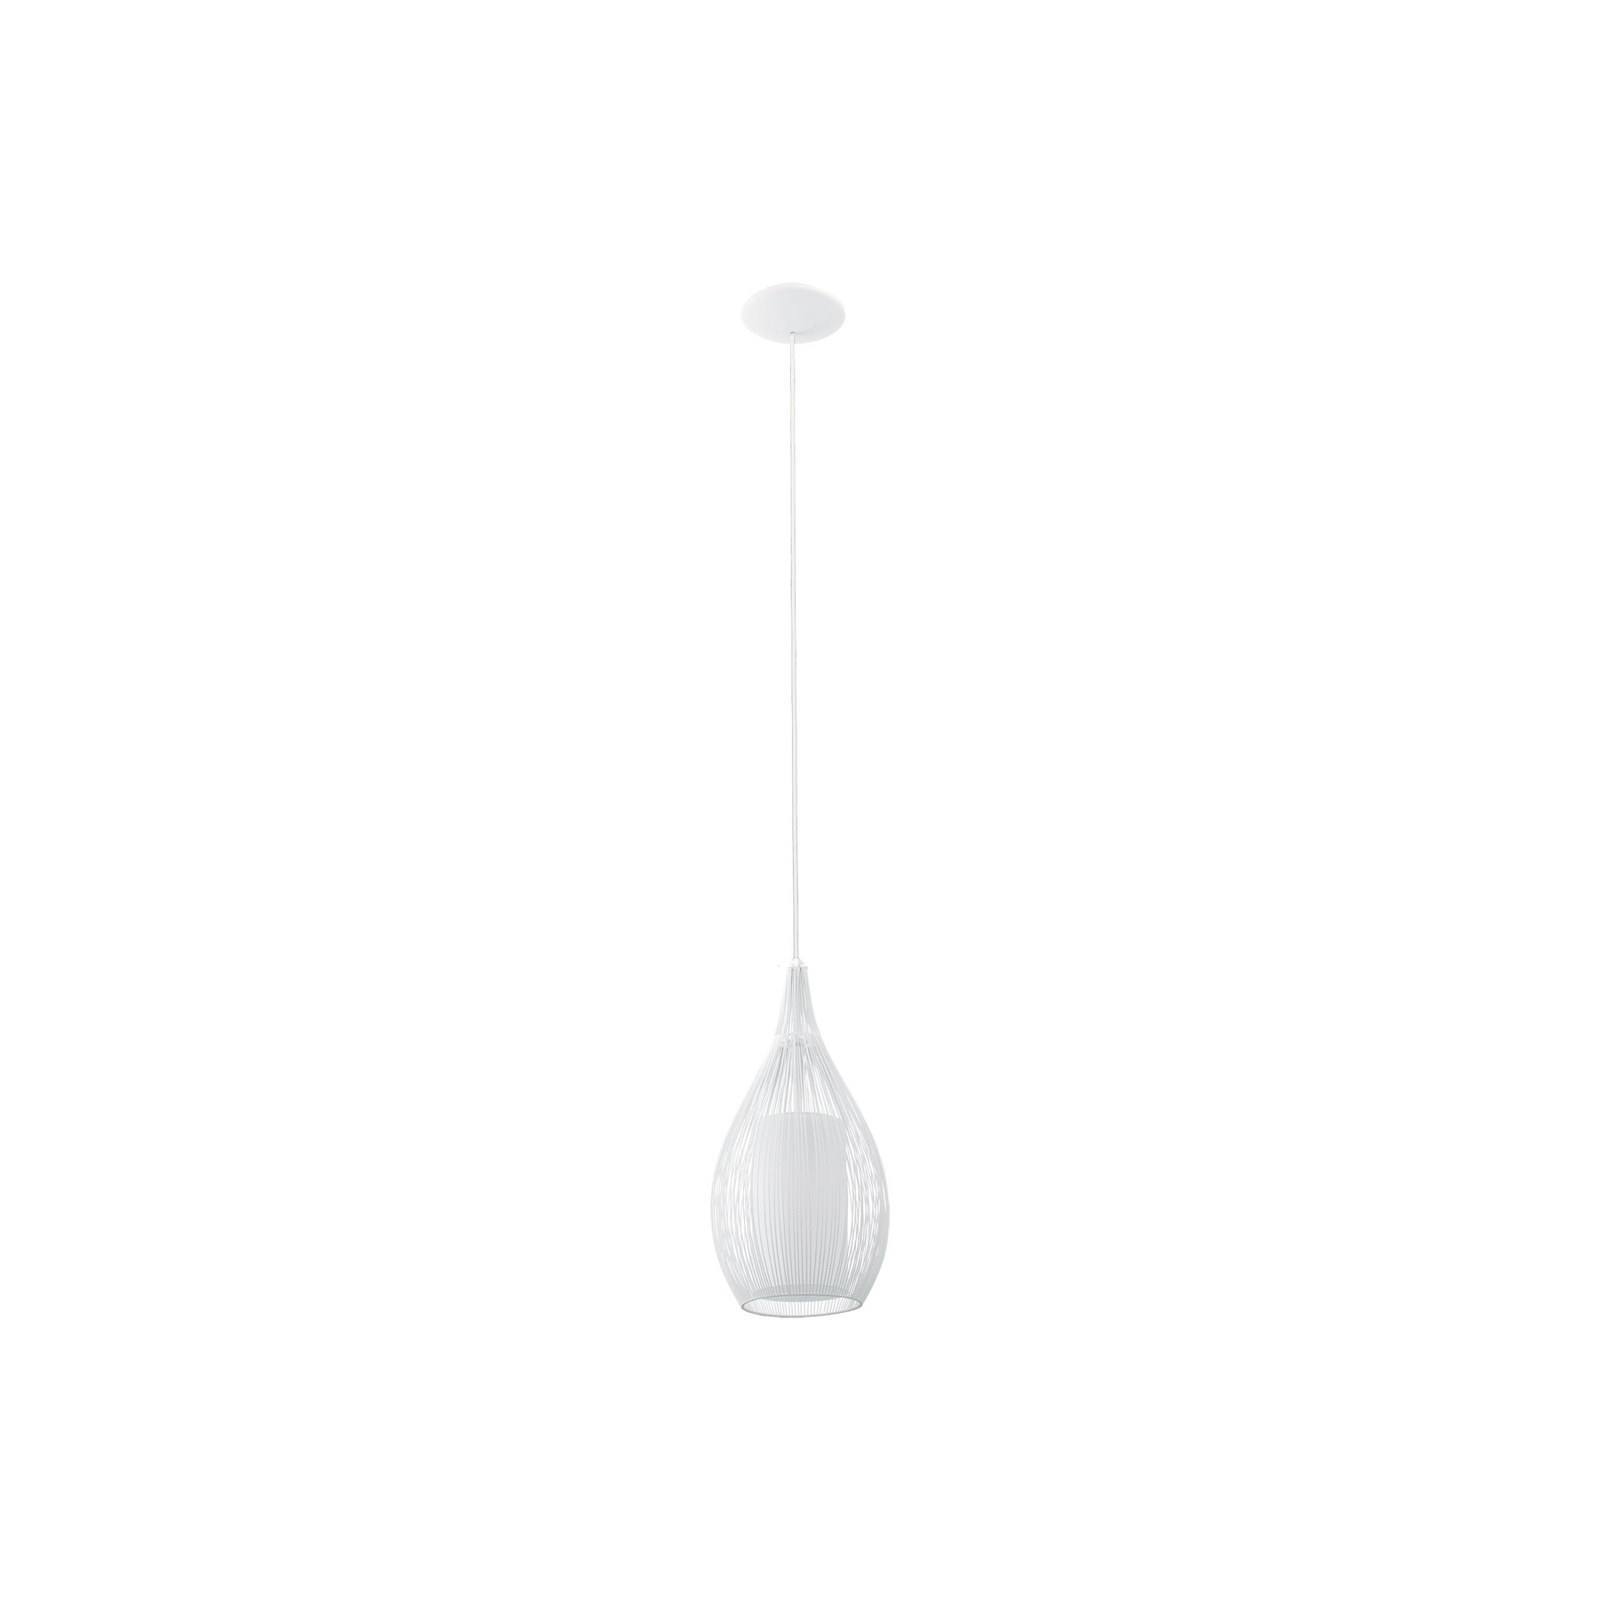 Beacon függesztéklámpa Solis, fehér, fém, üveg, Ø 19 cm